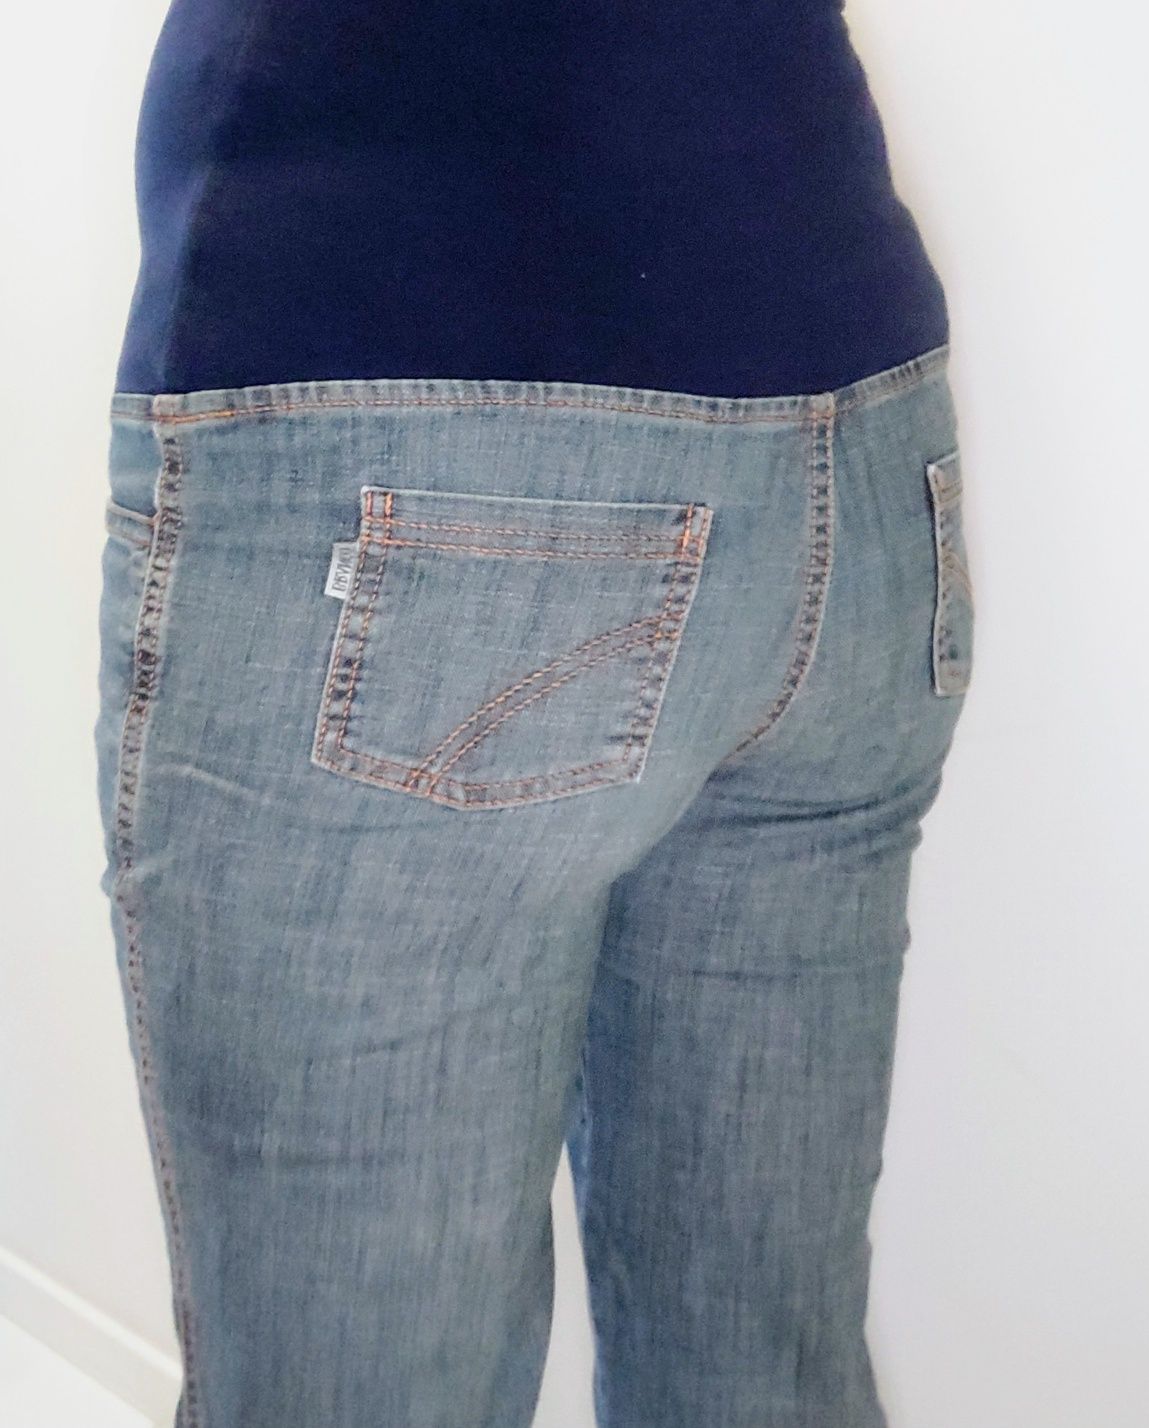 Jeansowe spodnie ciążowe, "rybaczki", długość 3/4, rozmiar S